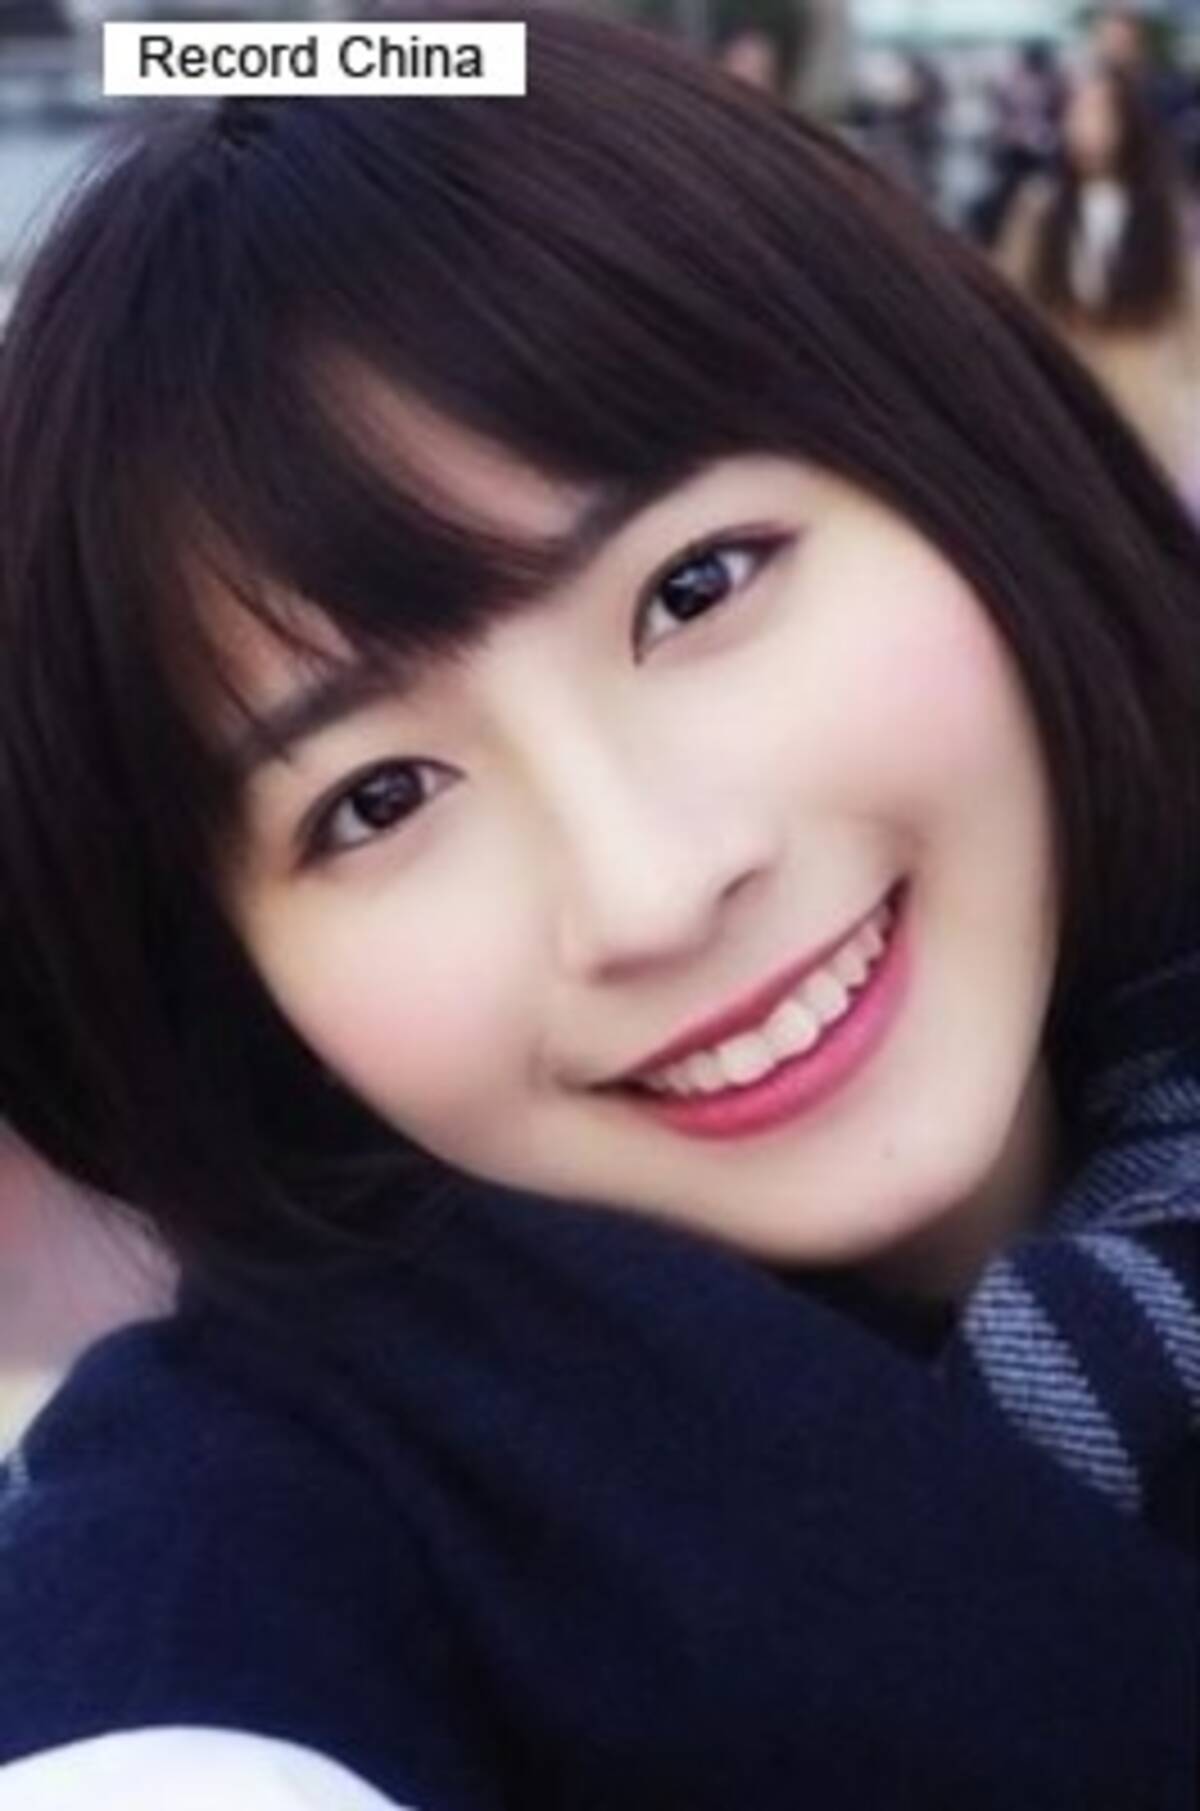 ガッキーそっくりの中国の美少女が話題 その癒やし系笑顔に日本のファンが増加 中国メディア 18年1月12日 エキサイトニュース